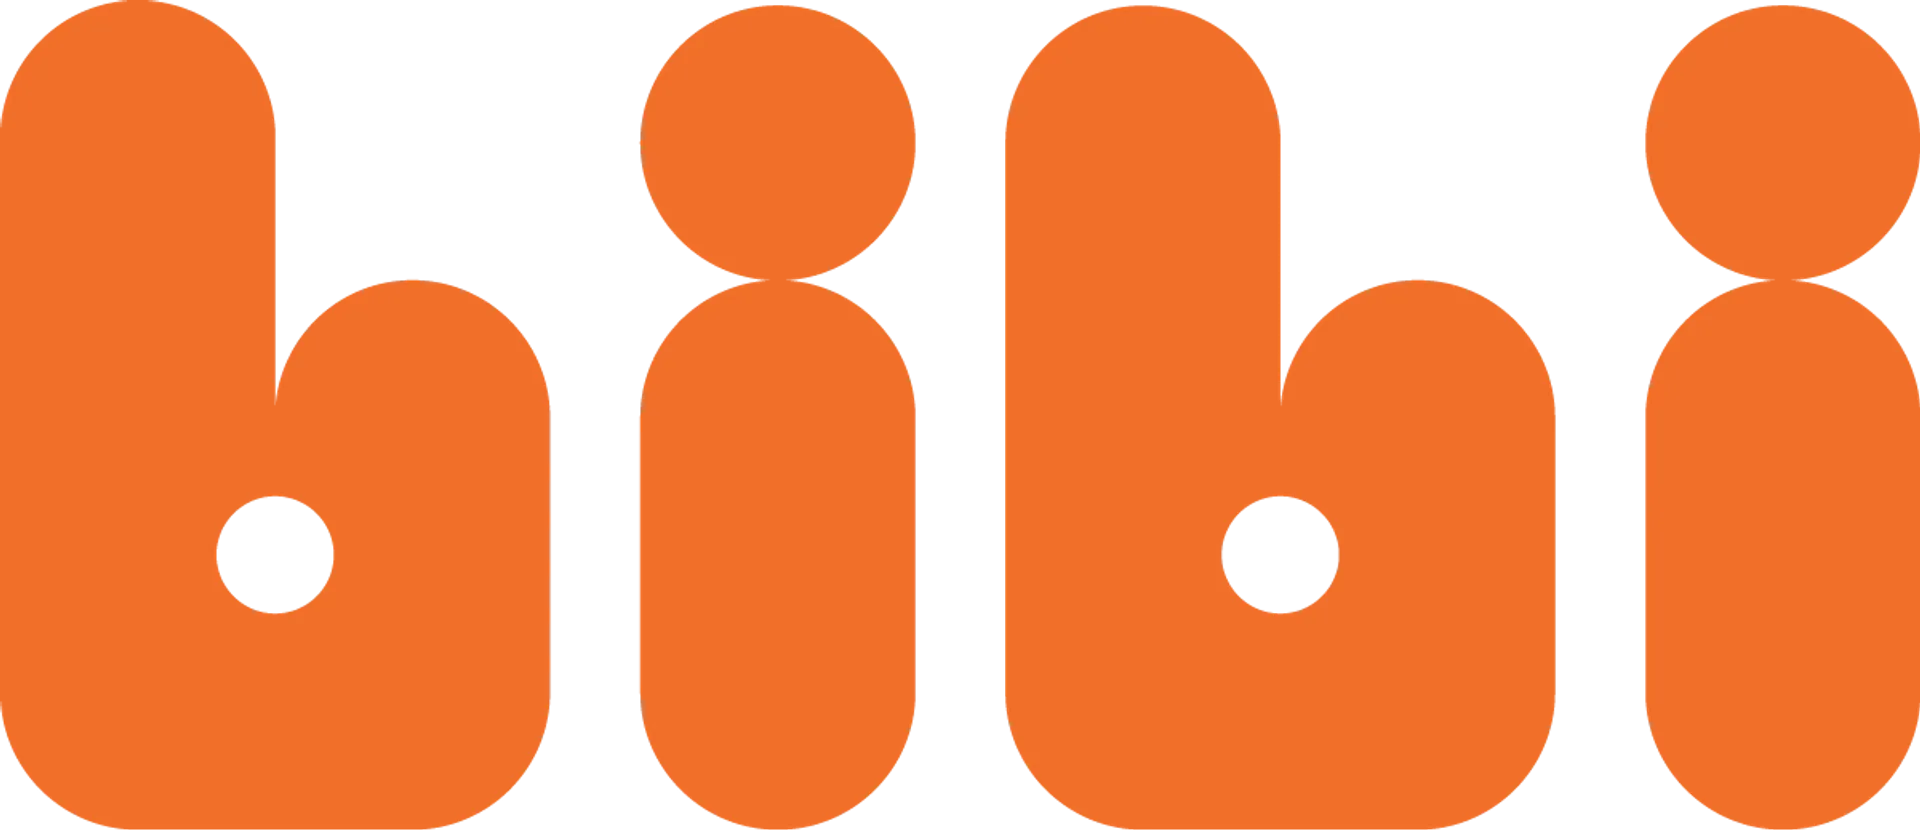 BIBI logo